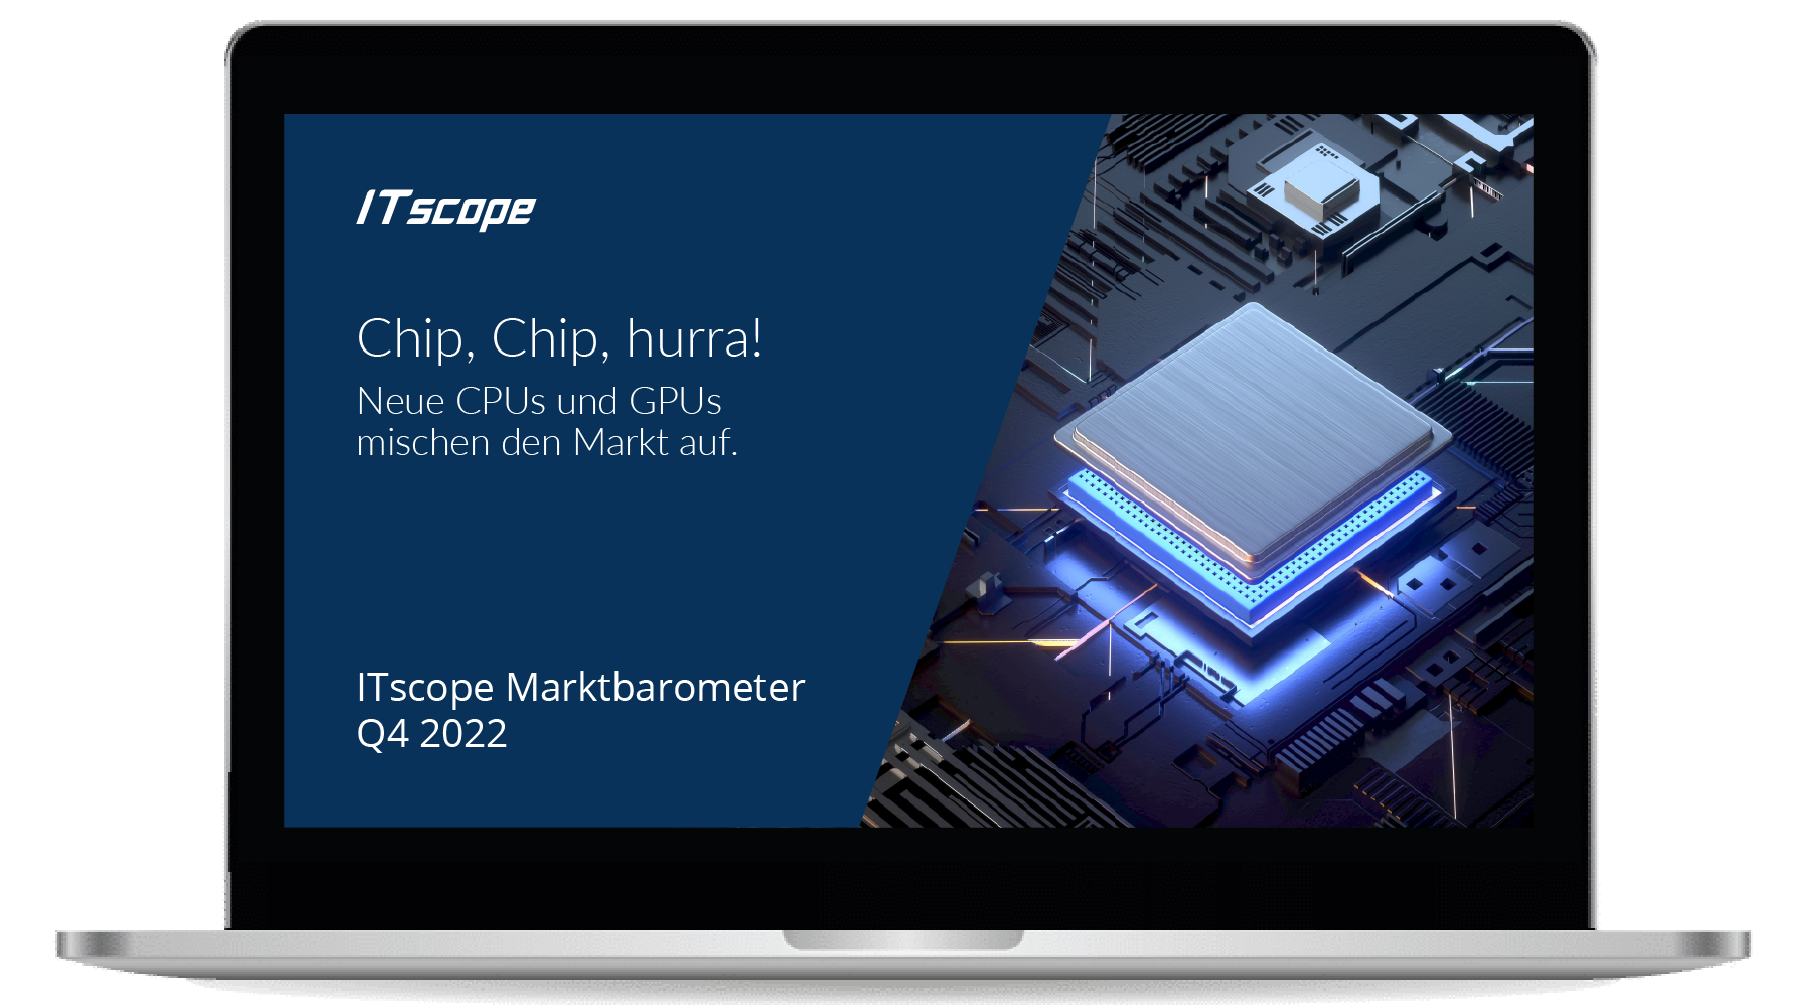 Chip, chip, hurra! Neue CPUs und GPUs mischen den Markt auf: ITscope Marktbarometer Q4 2022